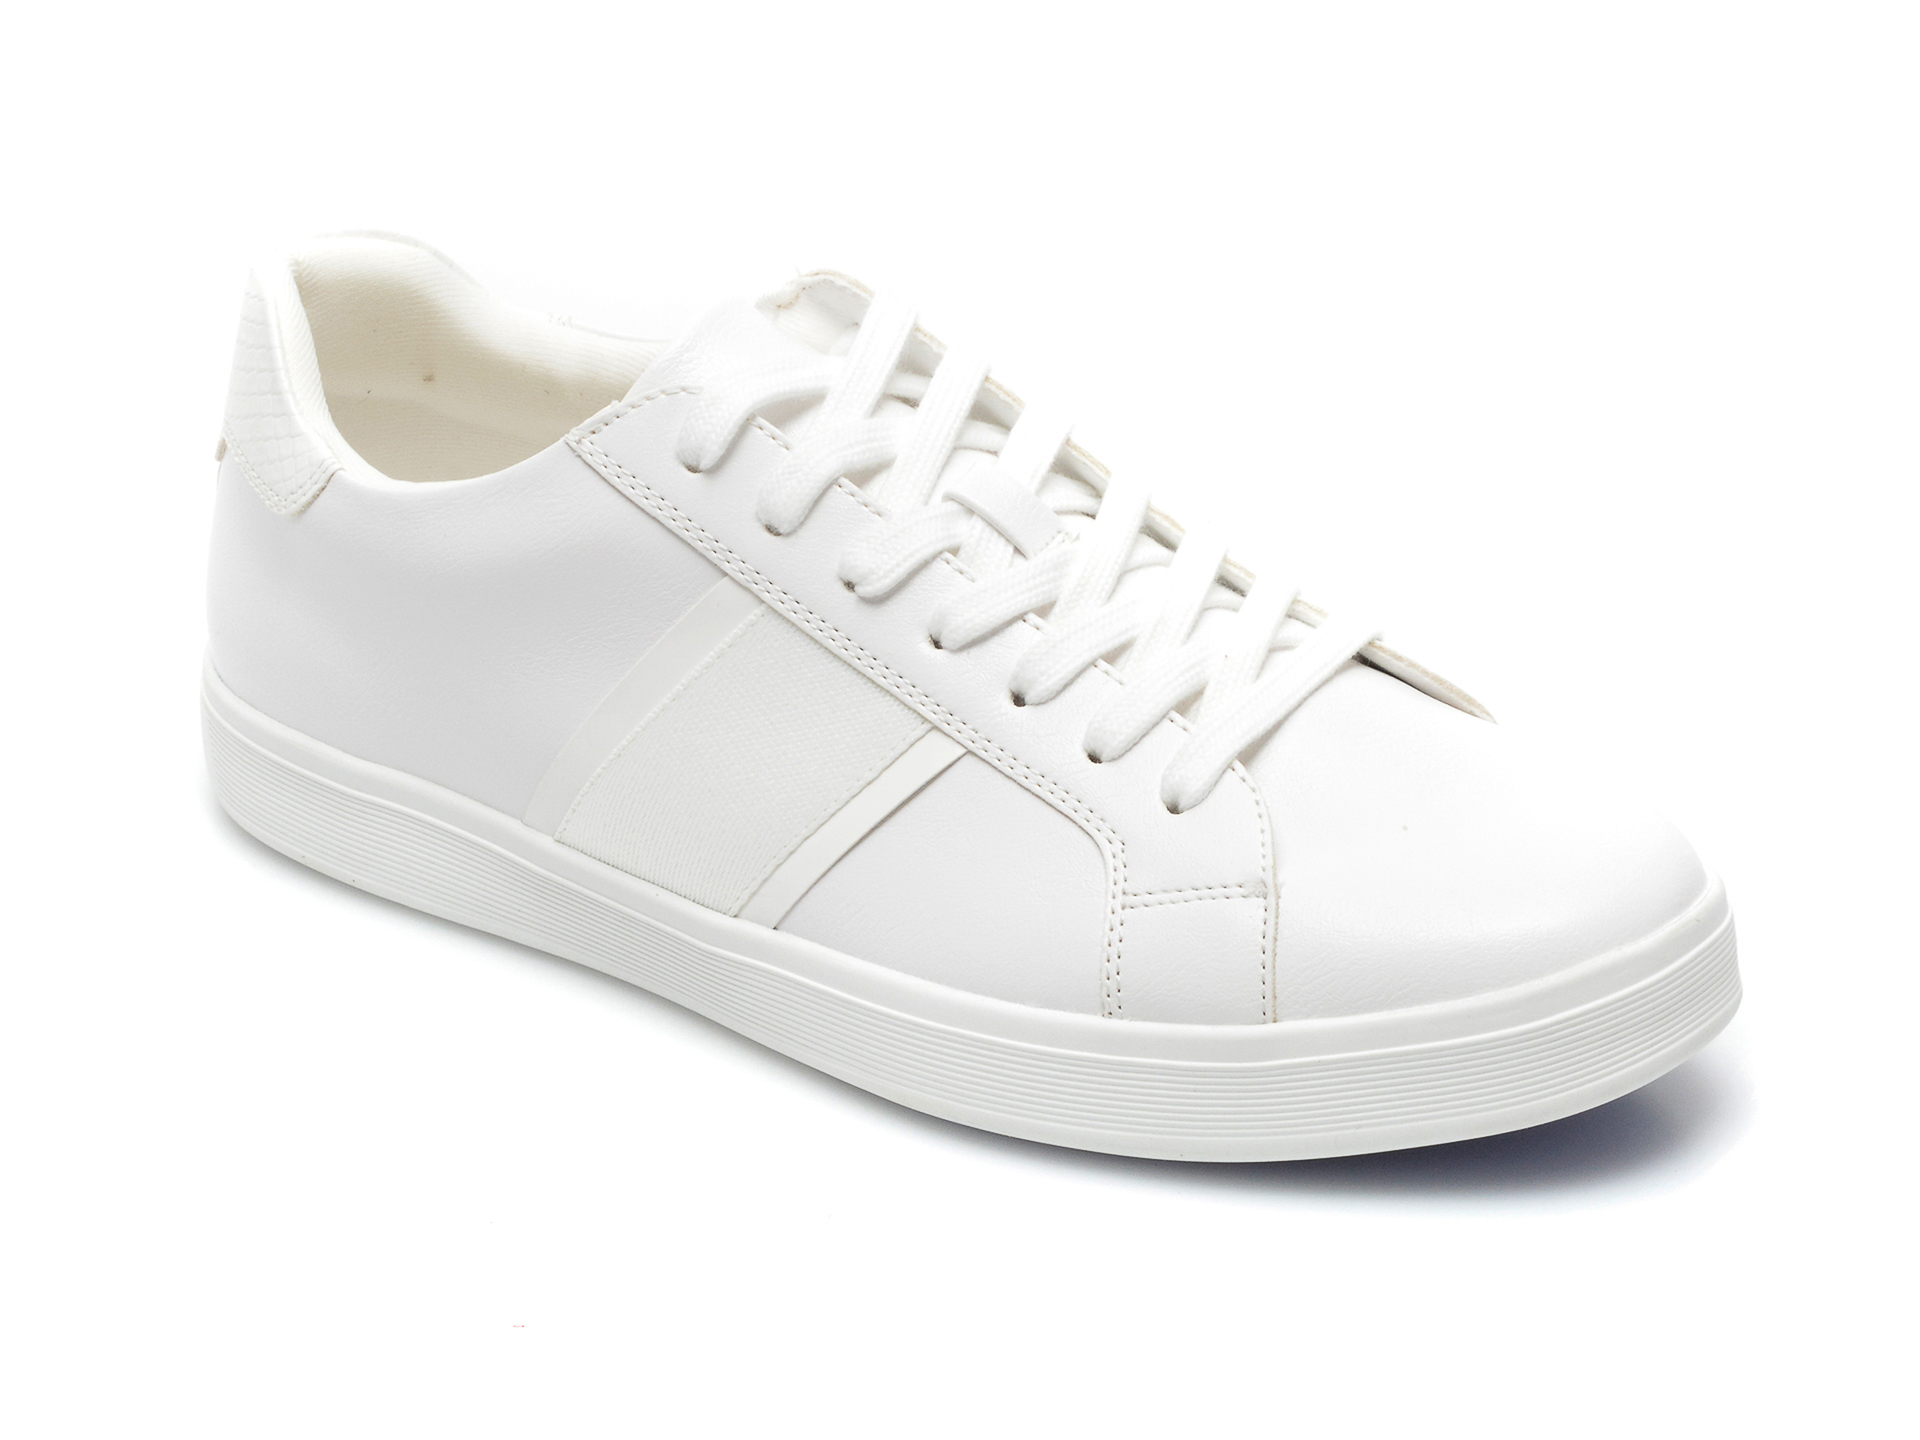 Pantofi sport ALDO albi, Cowien100, din piele ecologica